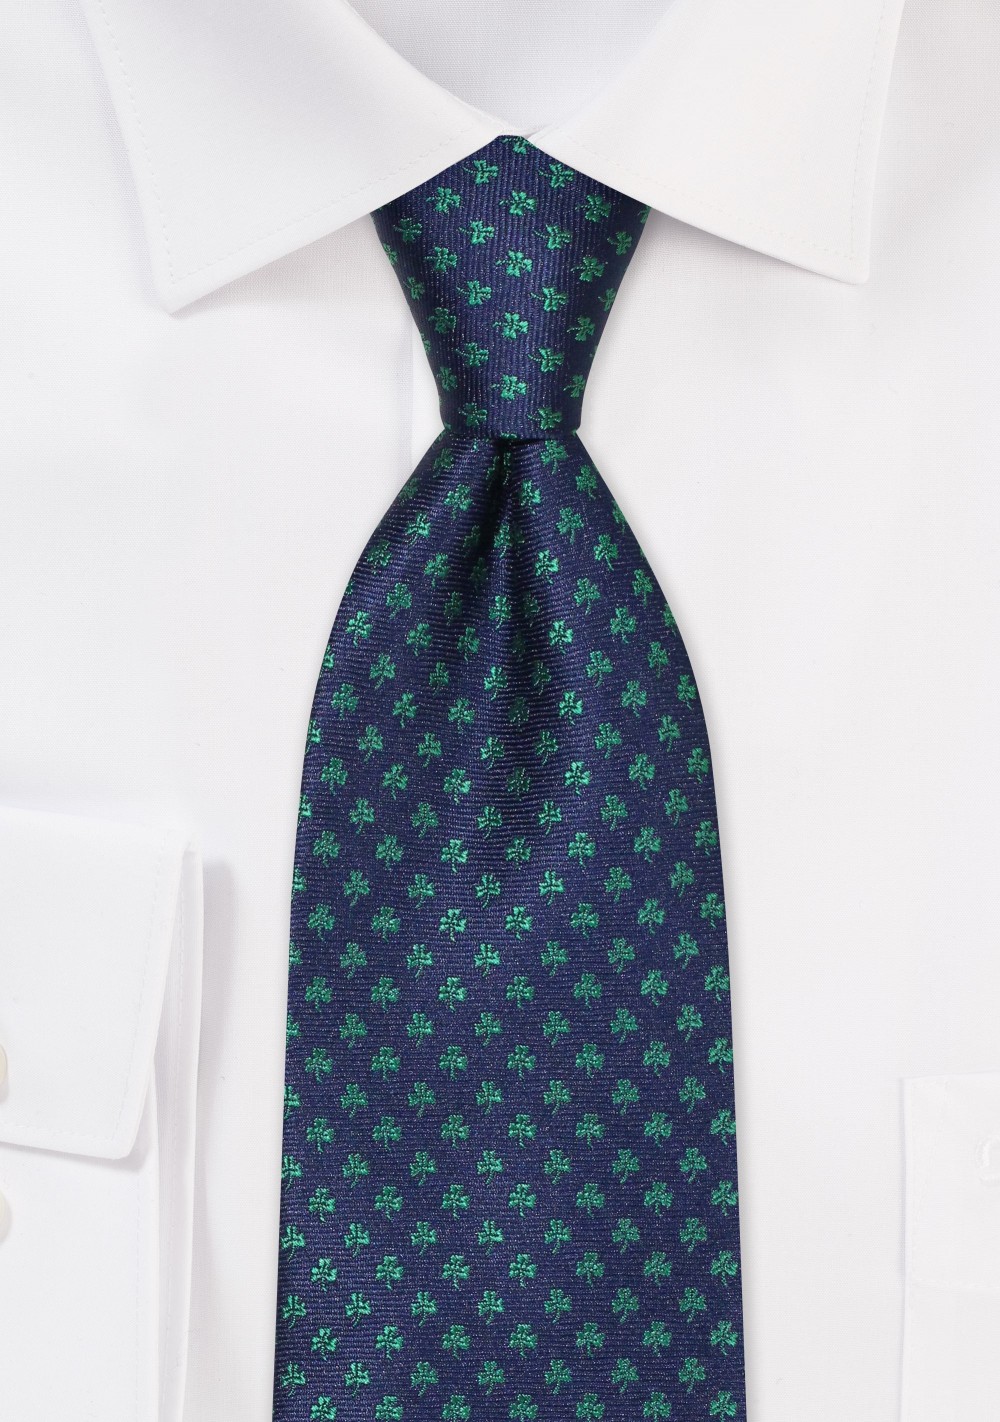 XL Tie in Blue with Tiny Shamrocks